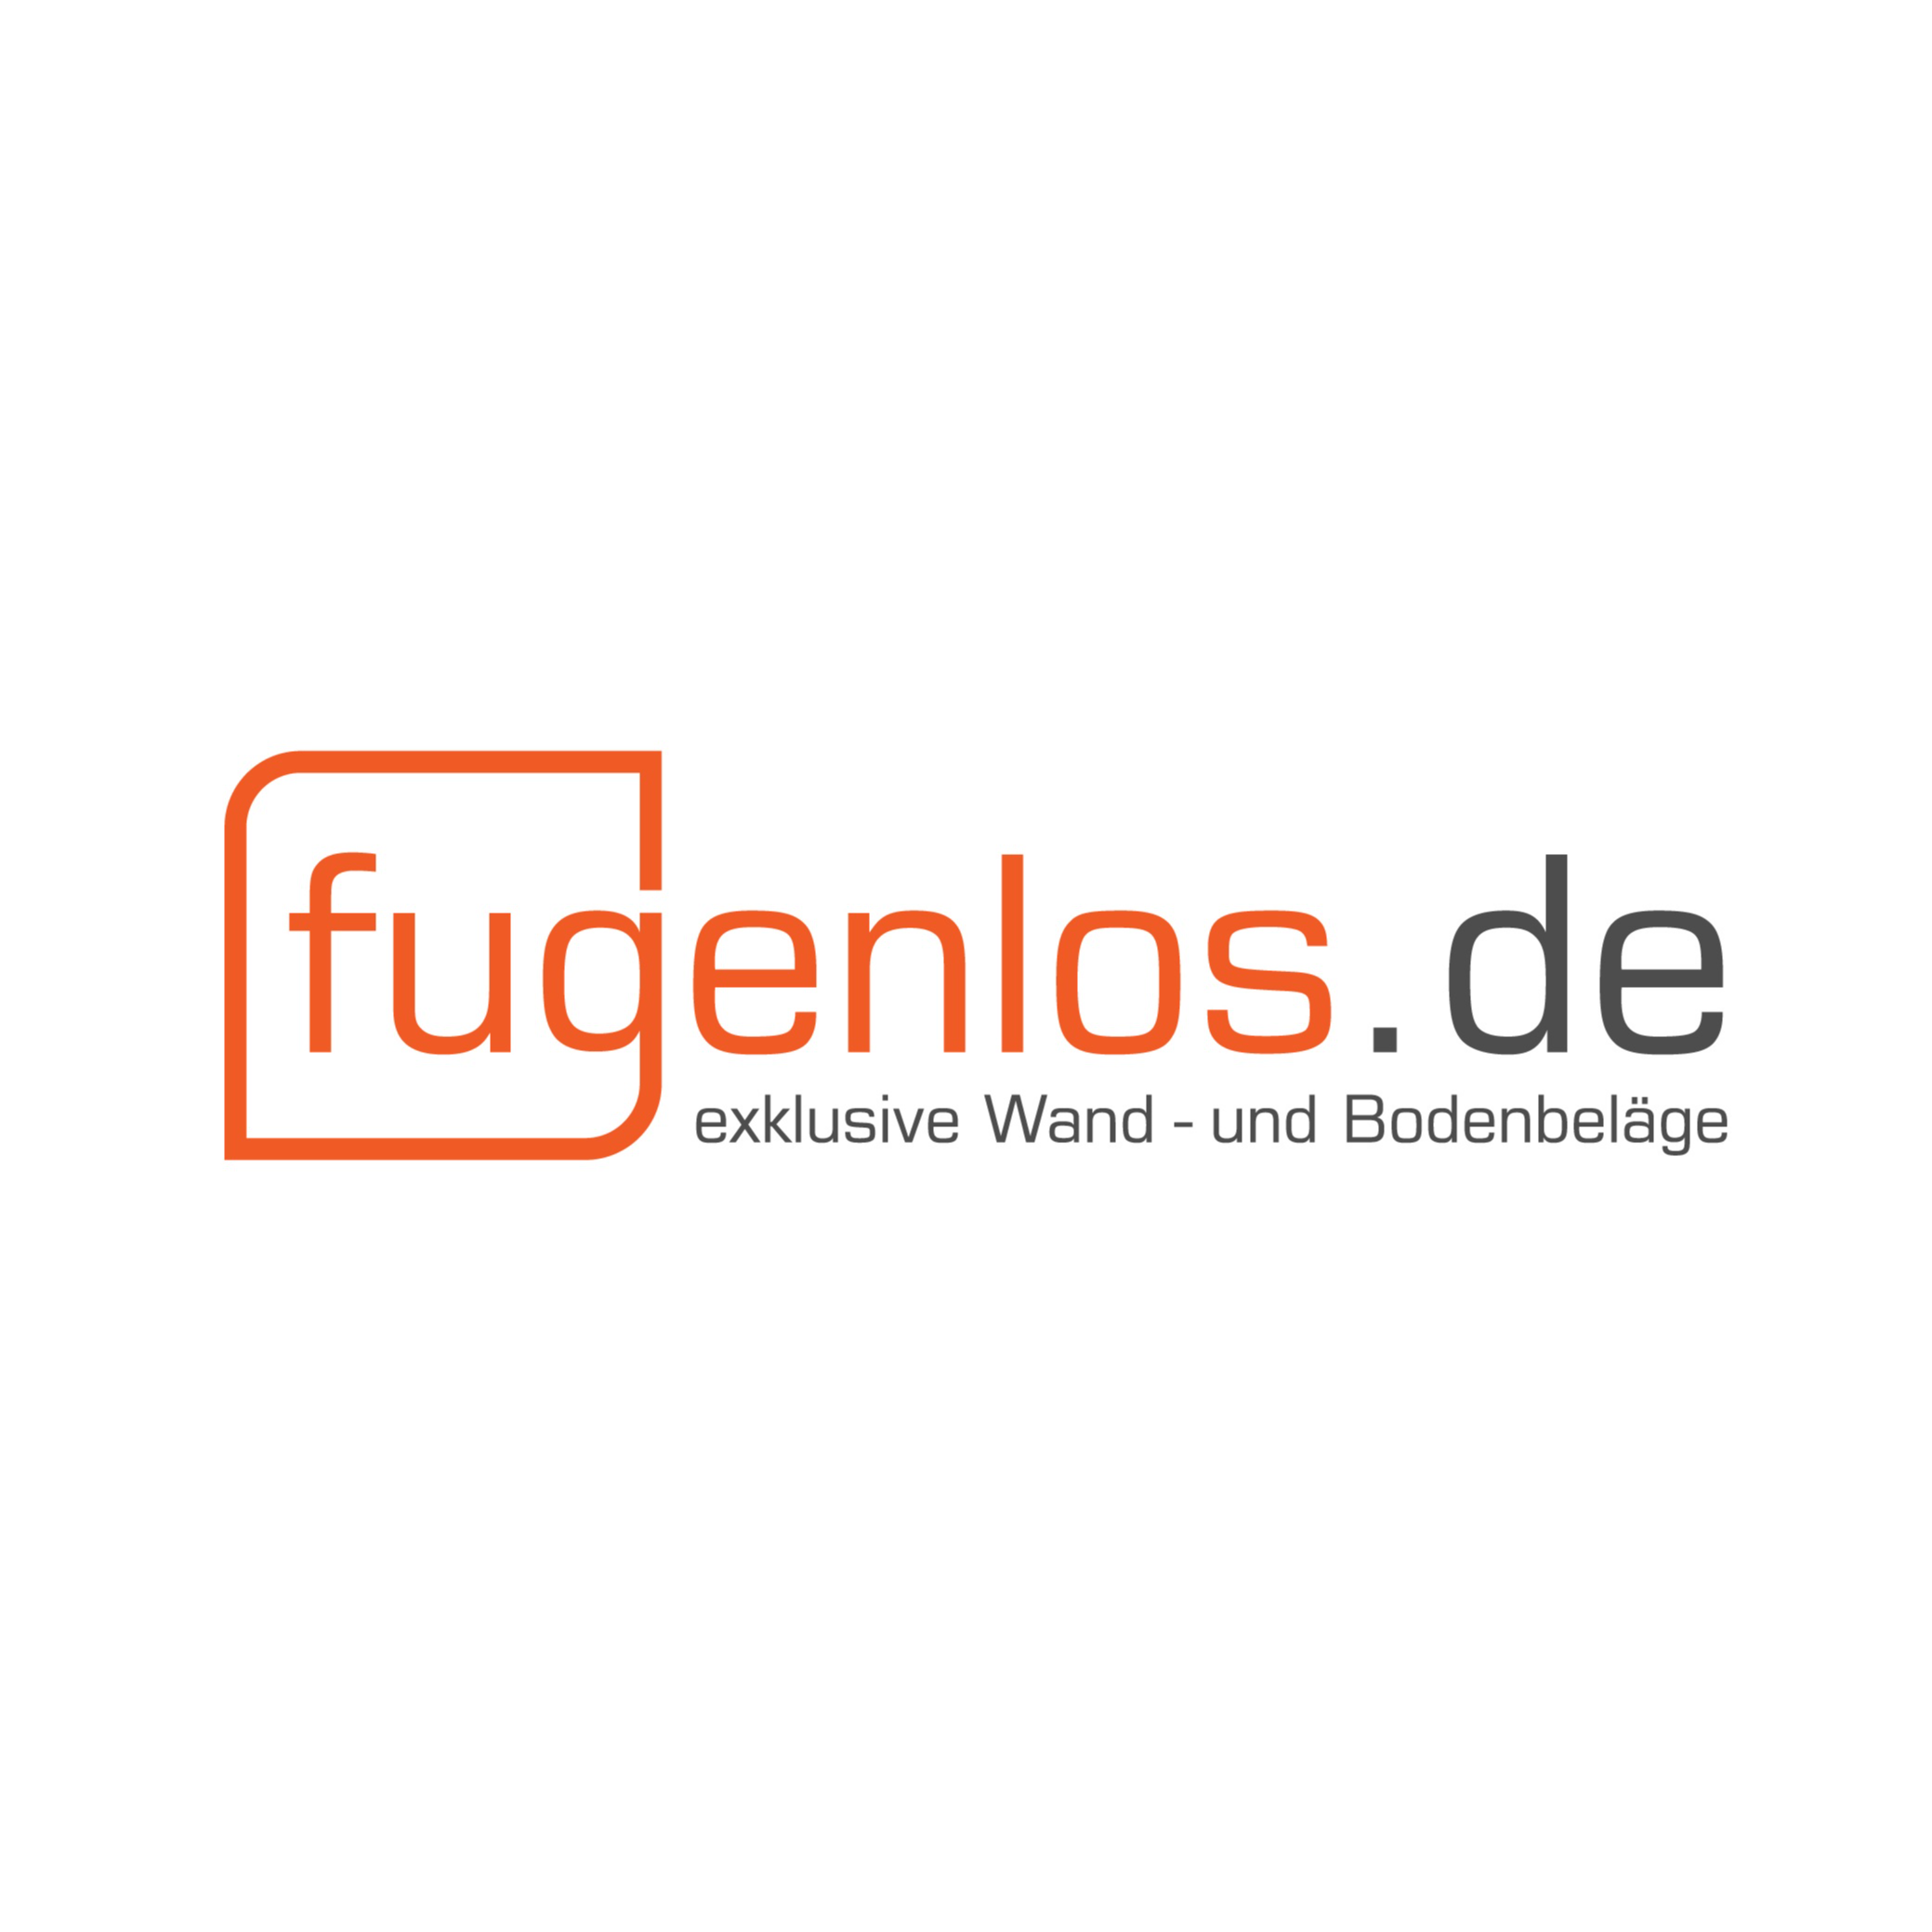 Logo von fugenlos.de - exklusive Wand- und Bodenbeläge - Inhaber Tim Marneth